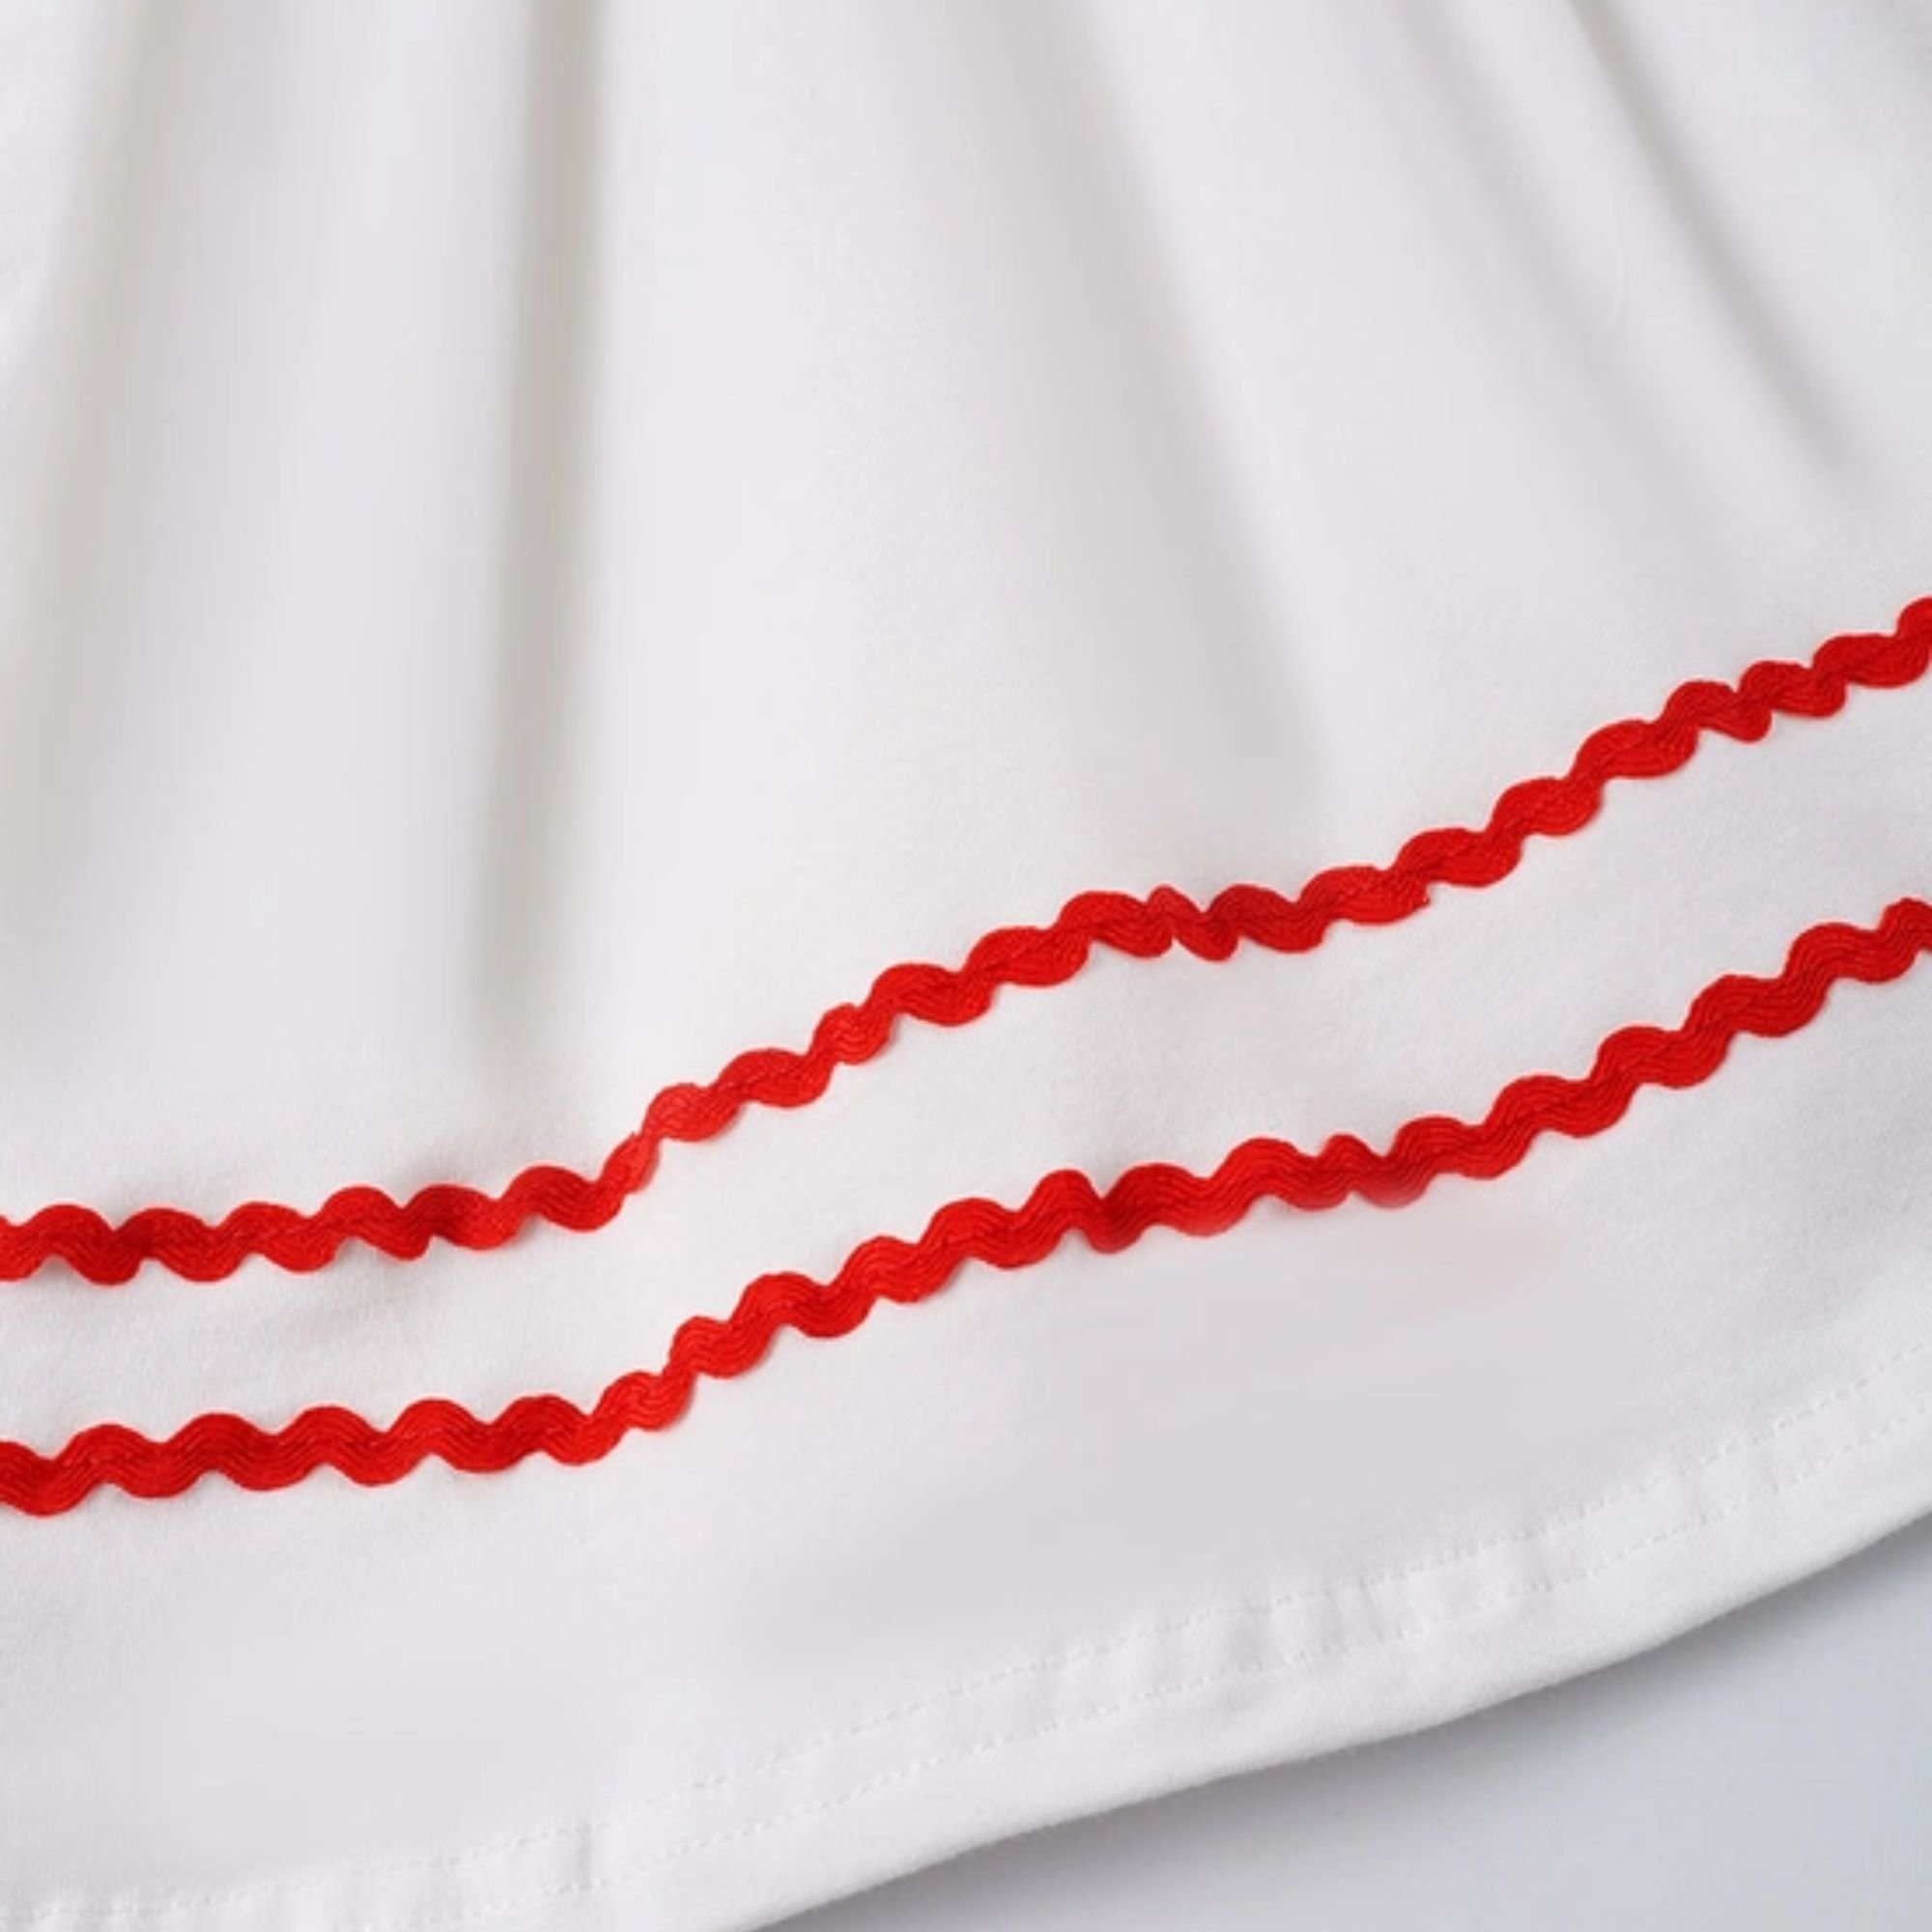 Mädchen Rüschenkleid Sommerkleid ausgestellt Kontrastnähte weiß Midikleid für suebidou Kleid